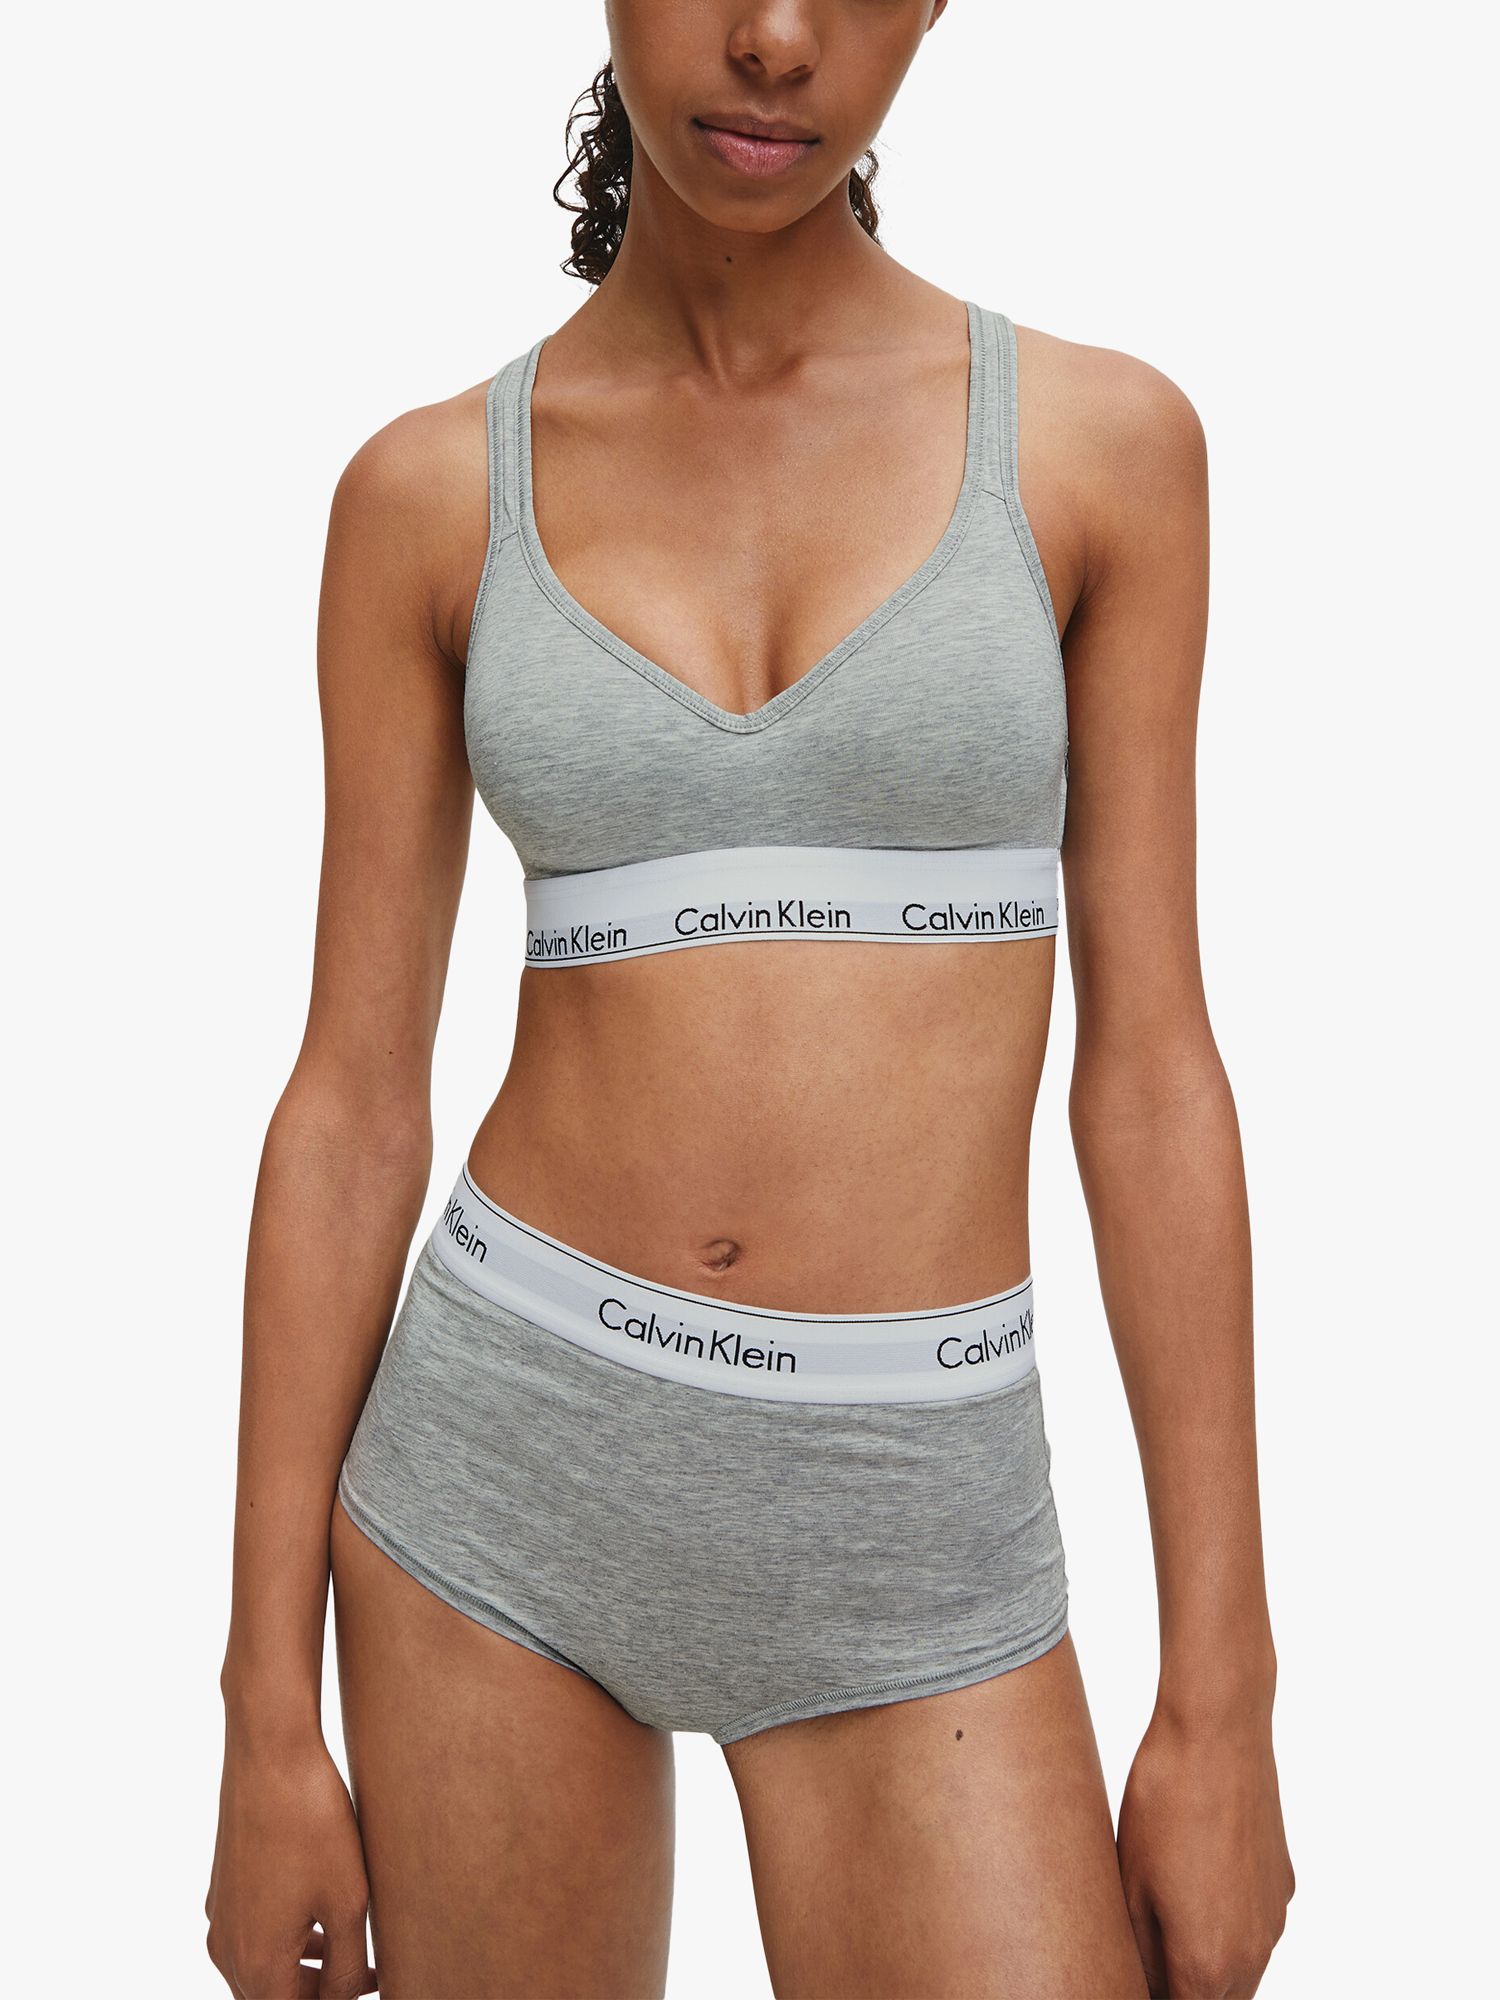 CALVIN KLEIN Calvin Klein CK ONE COTTON - Sports Bra - Women's - grey  heather - Private Sport Shop